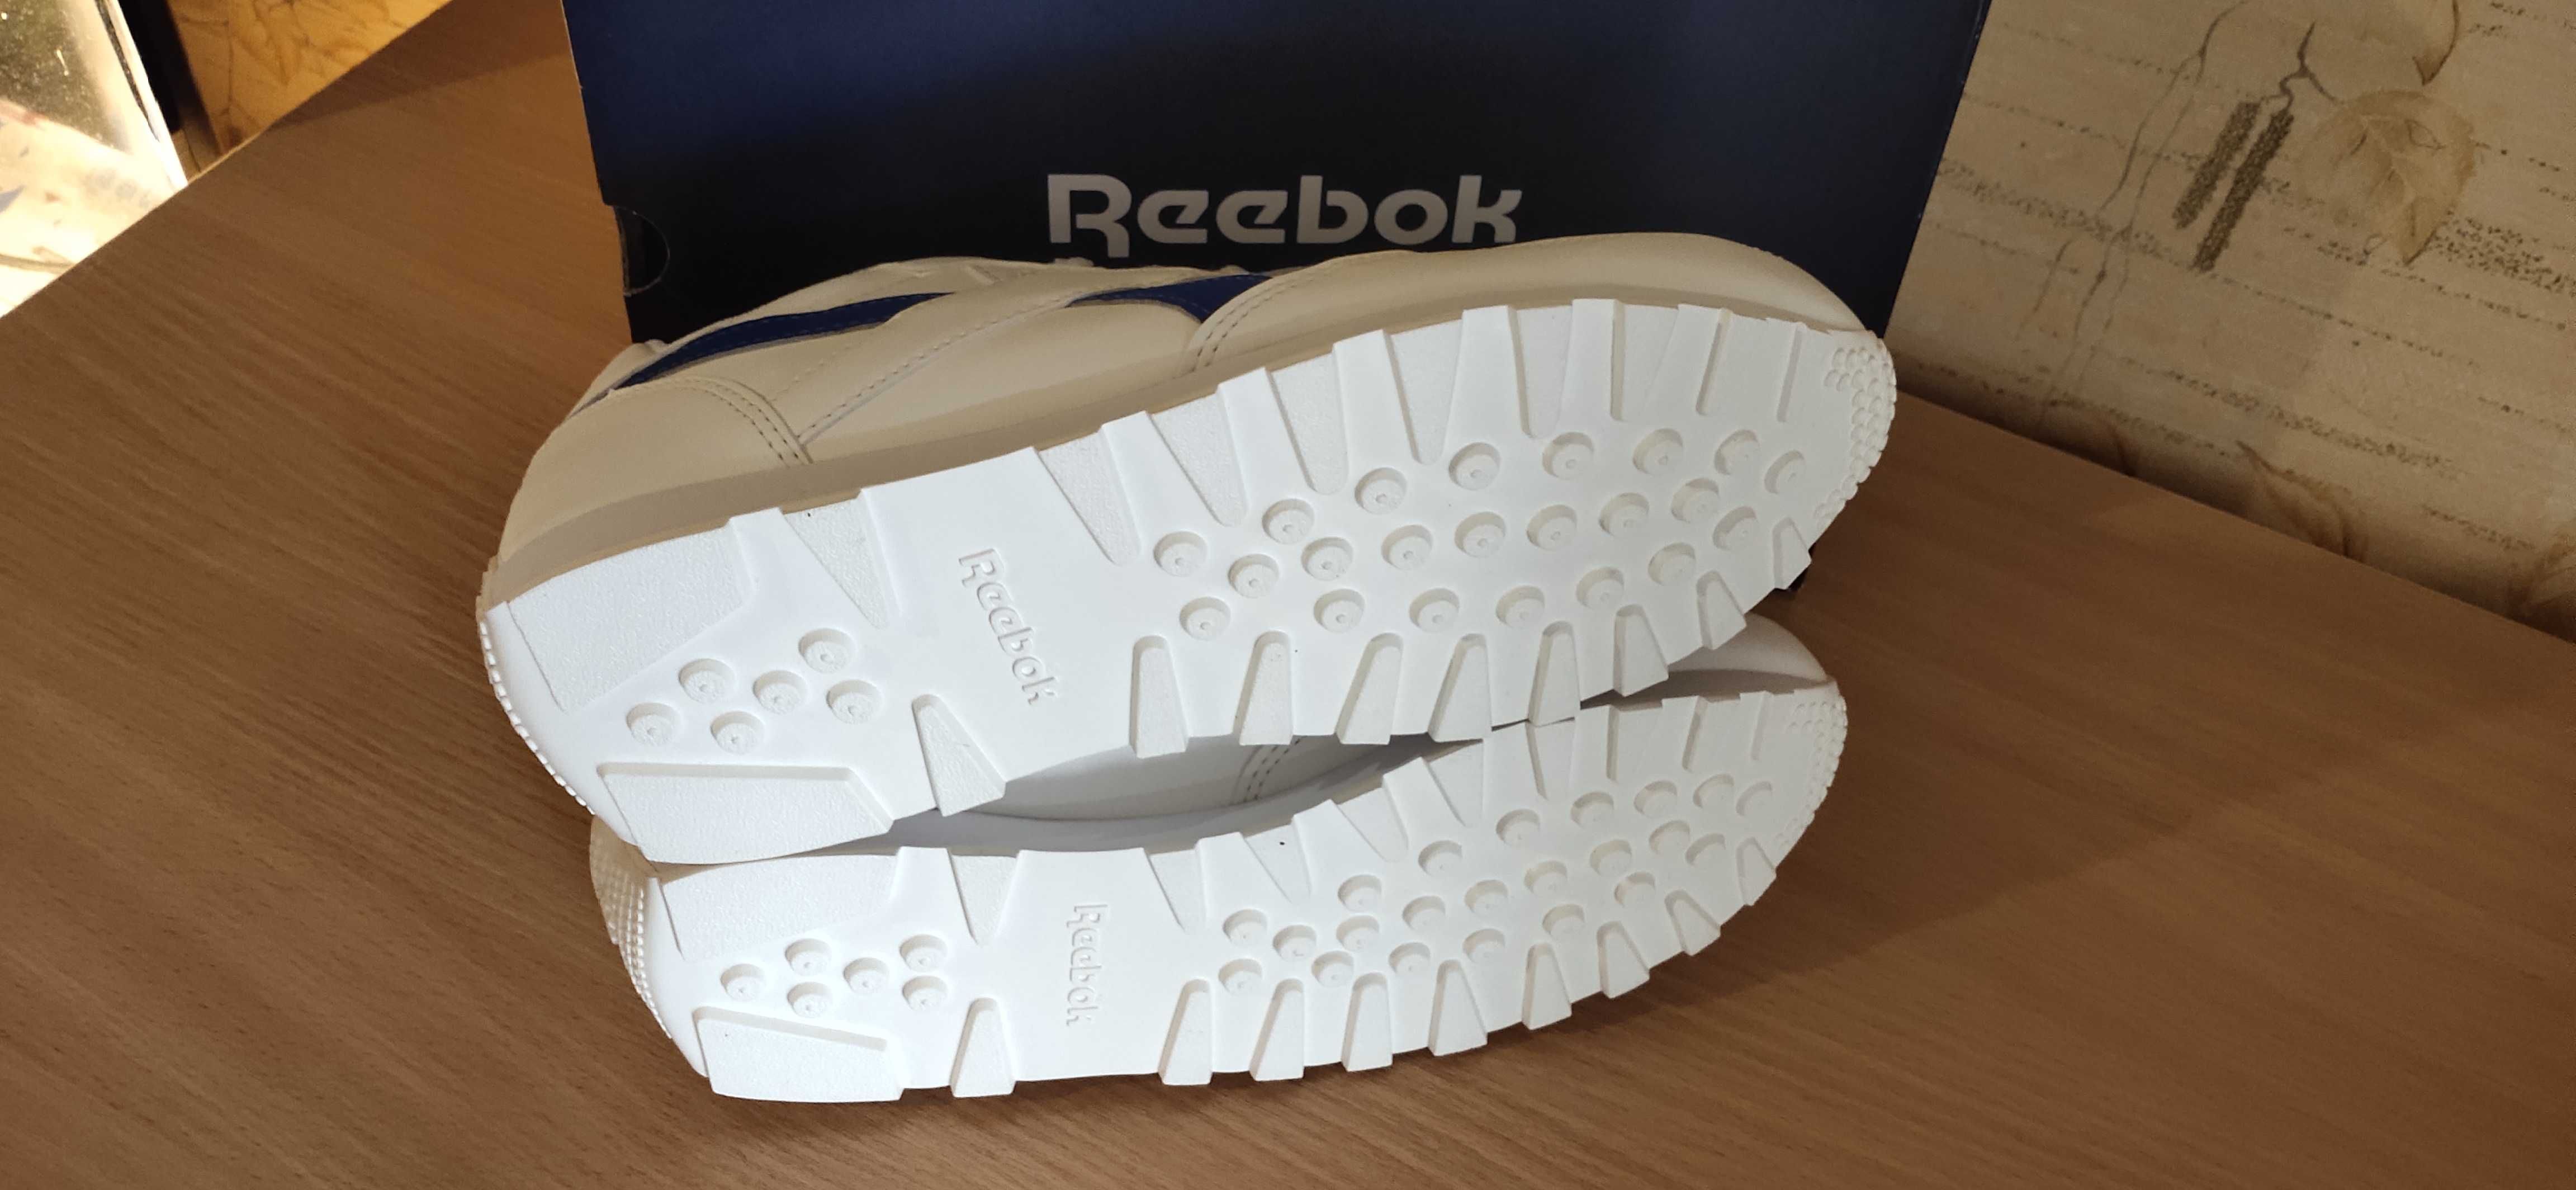 Бігові чоловічі літні кросівки мужские кроссовки Reebok Rewind Run